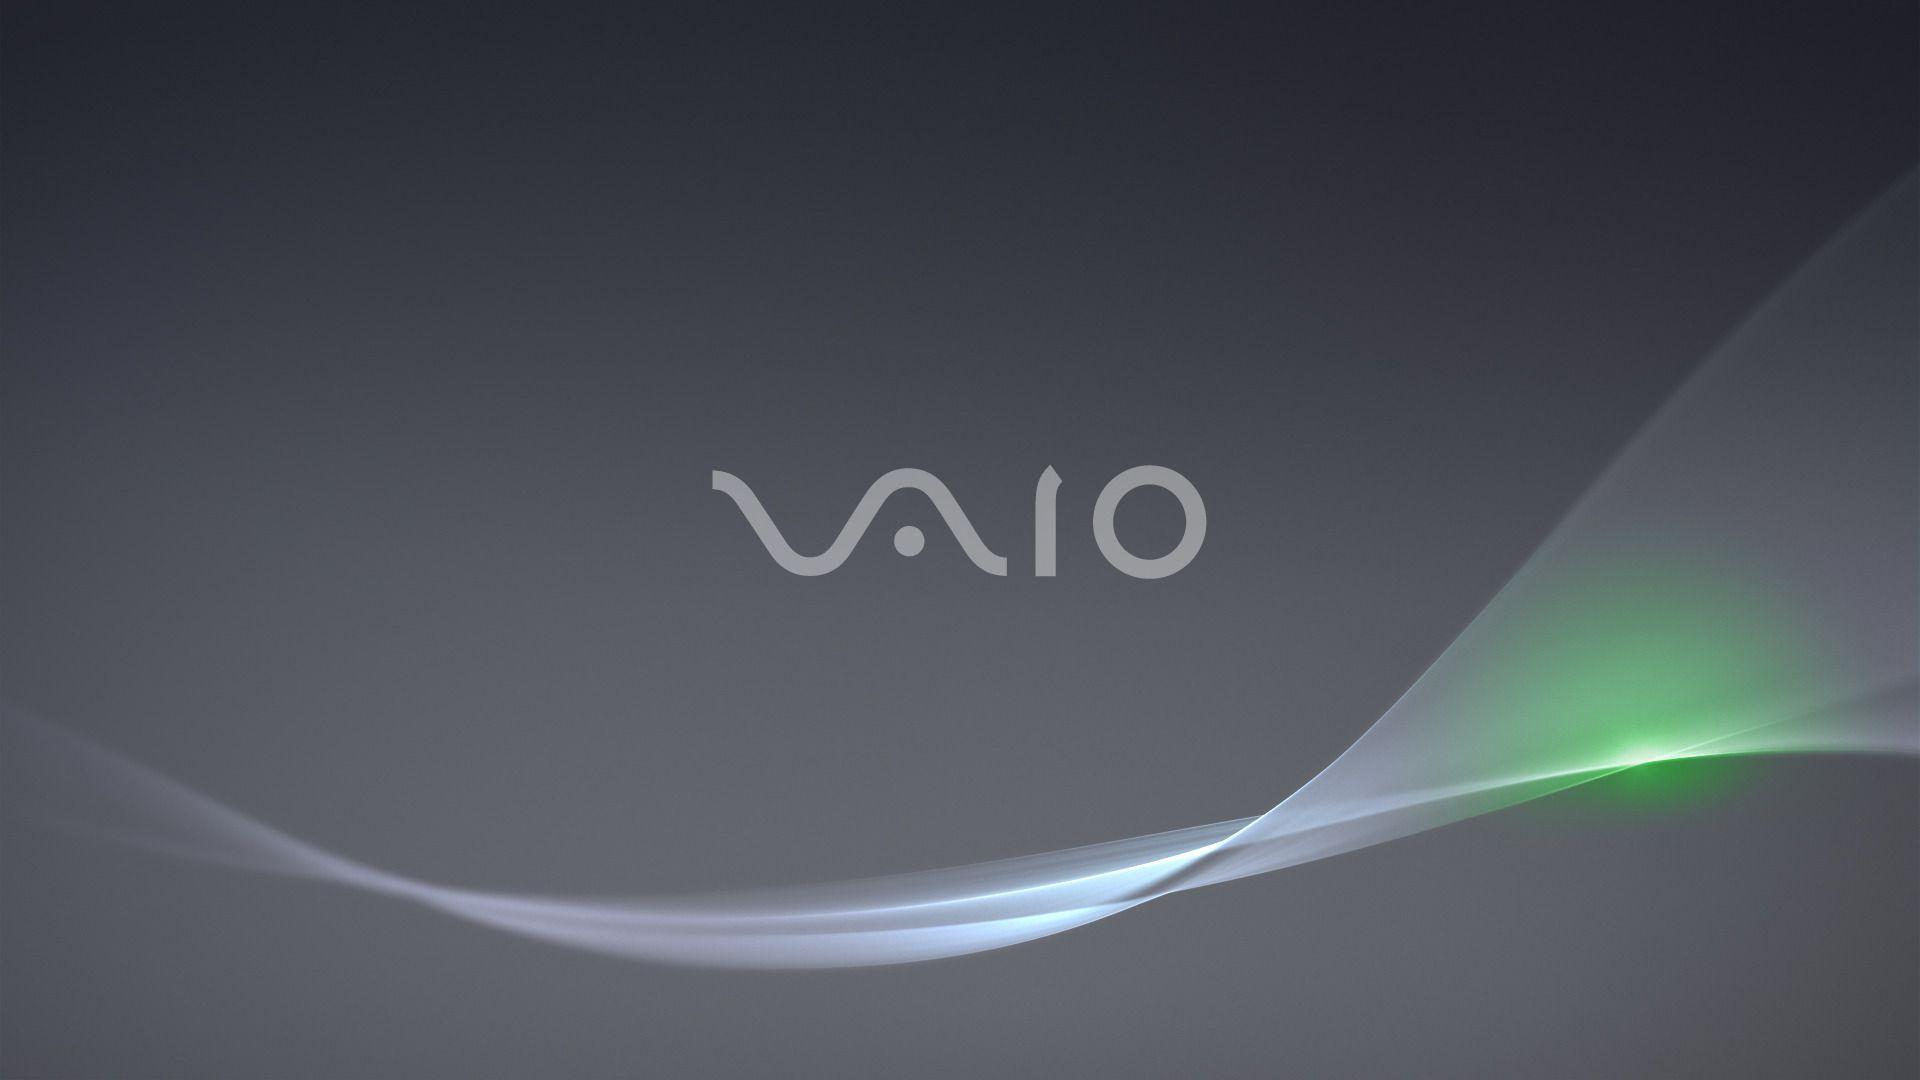 Sony Vaio Desktop Wallpapers Top Free Sony Vaio Desktop Backgrounds Wallpaperaccess